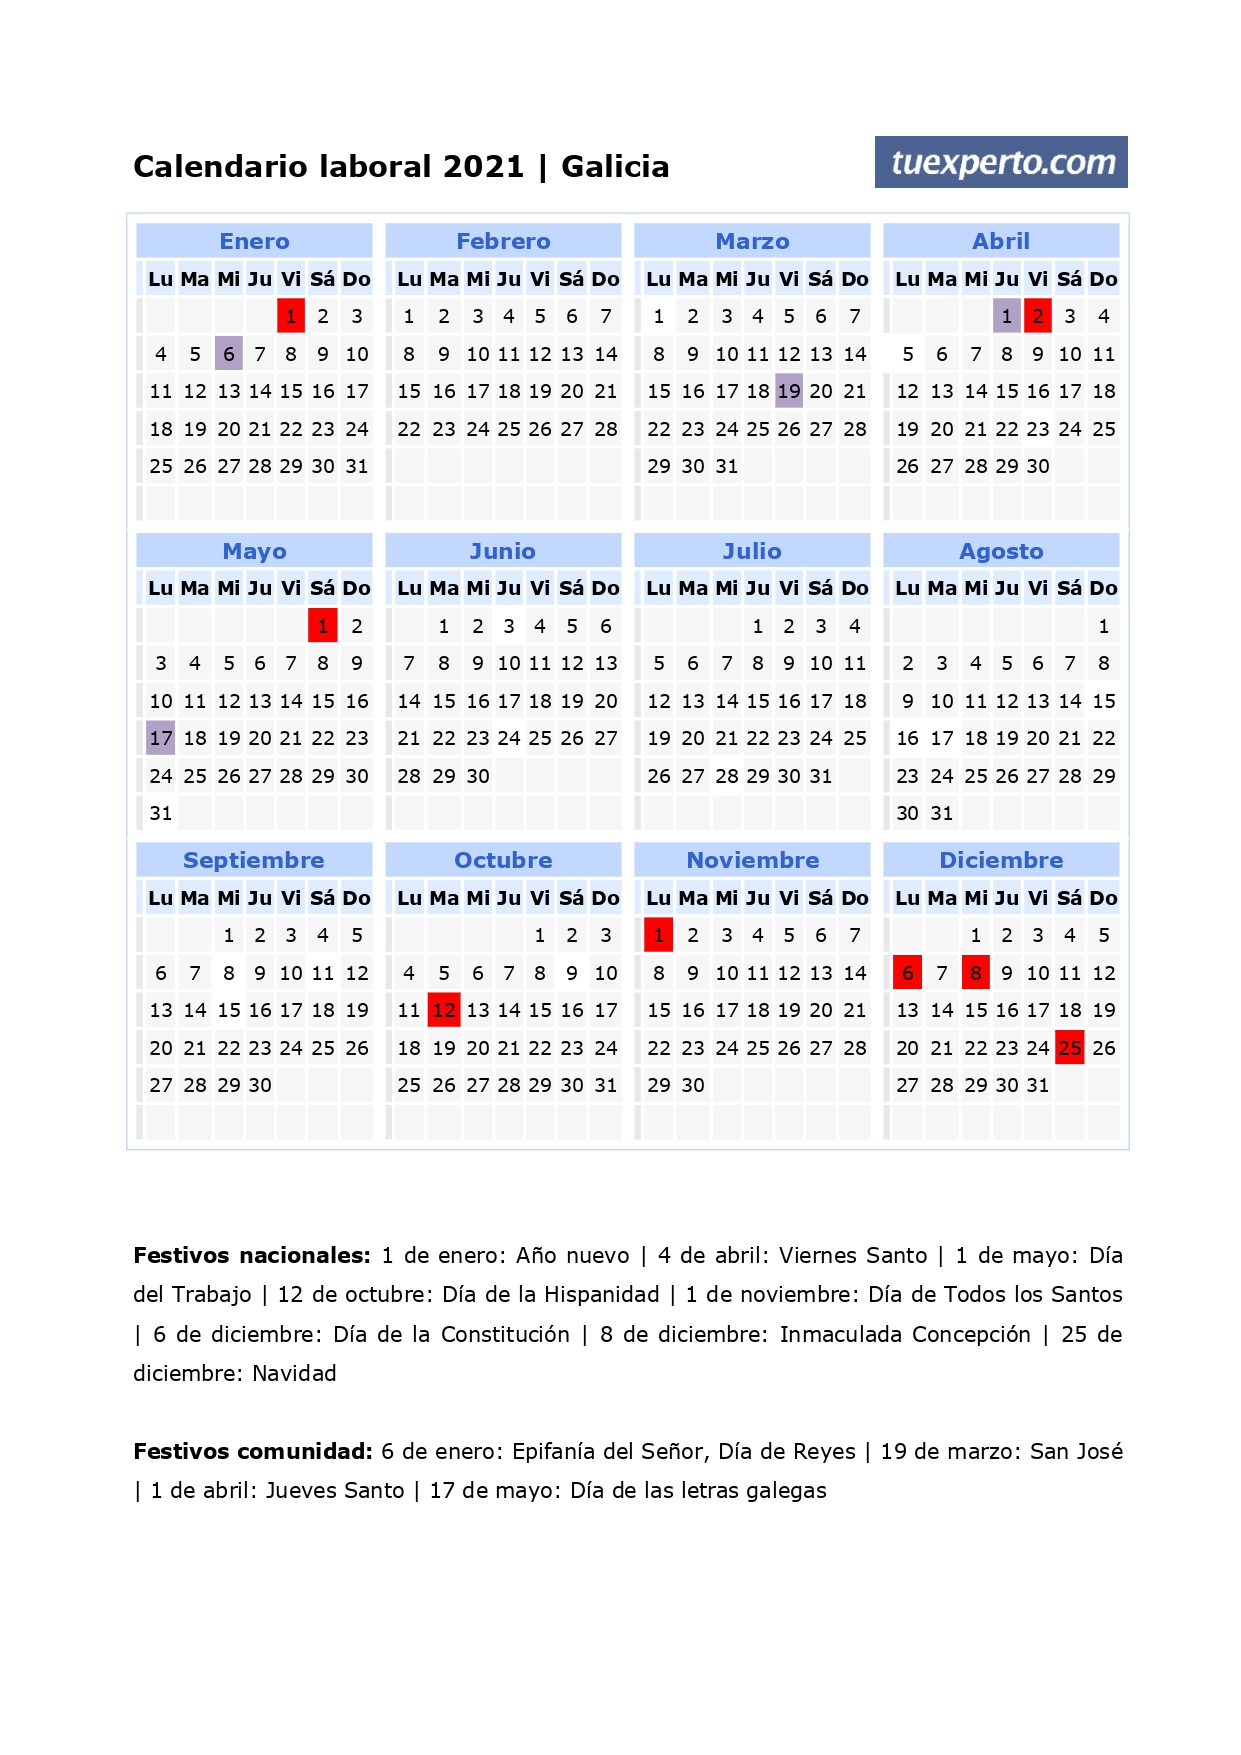 Calendario Laboral 2021 Calendarios Con Festivos Por